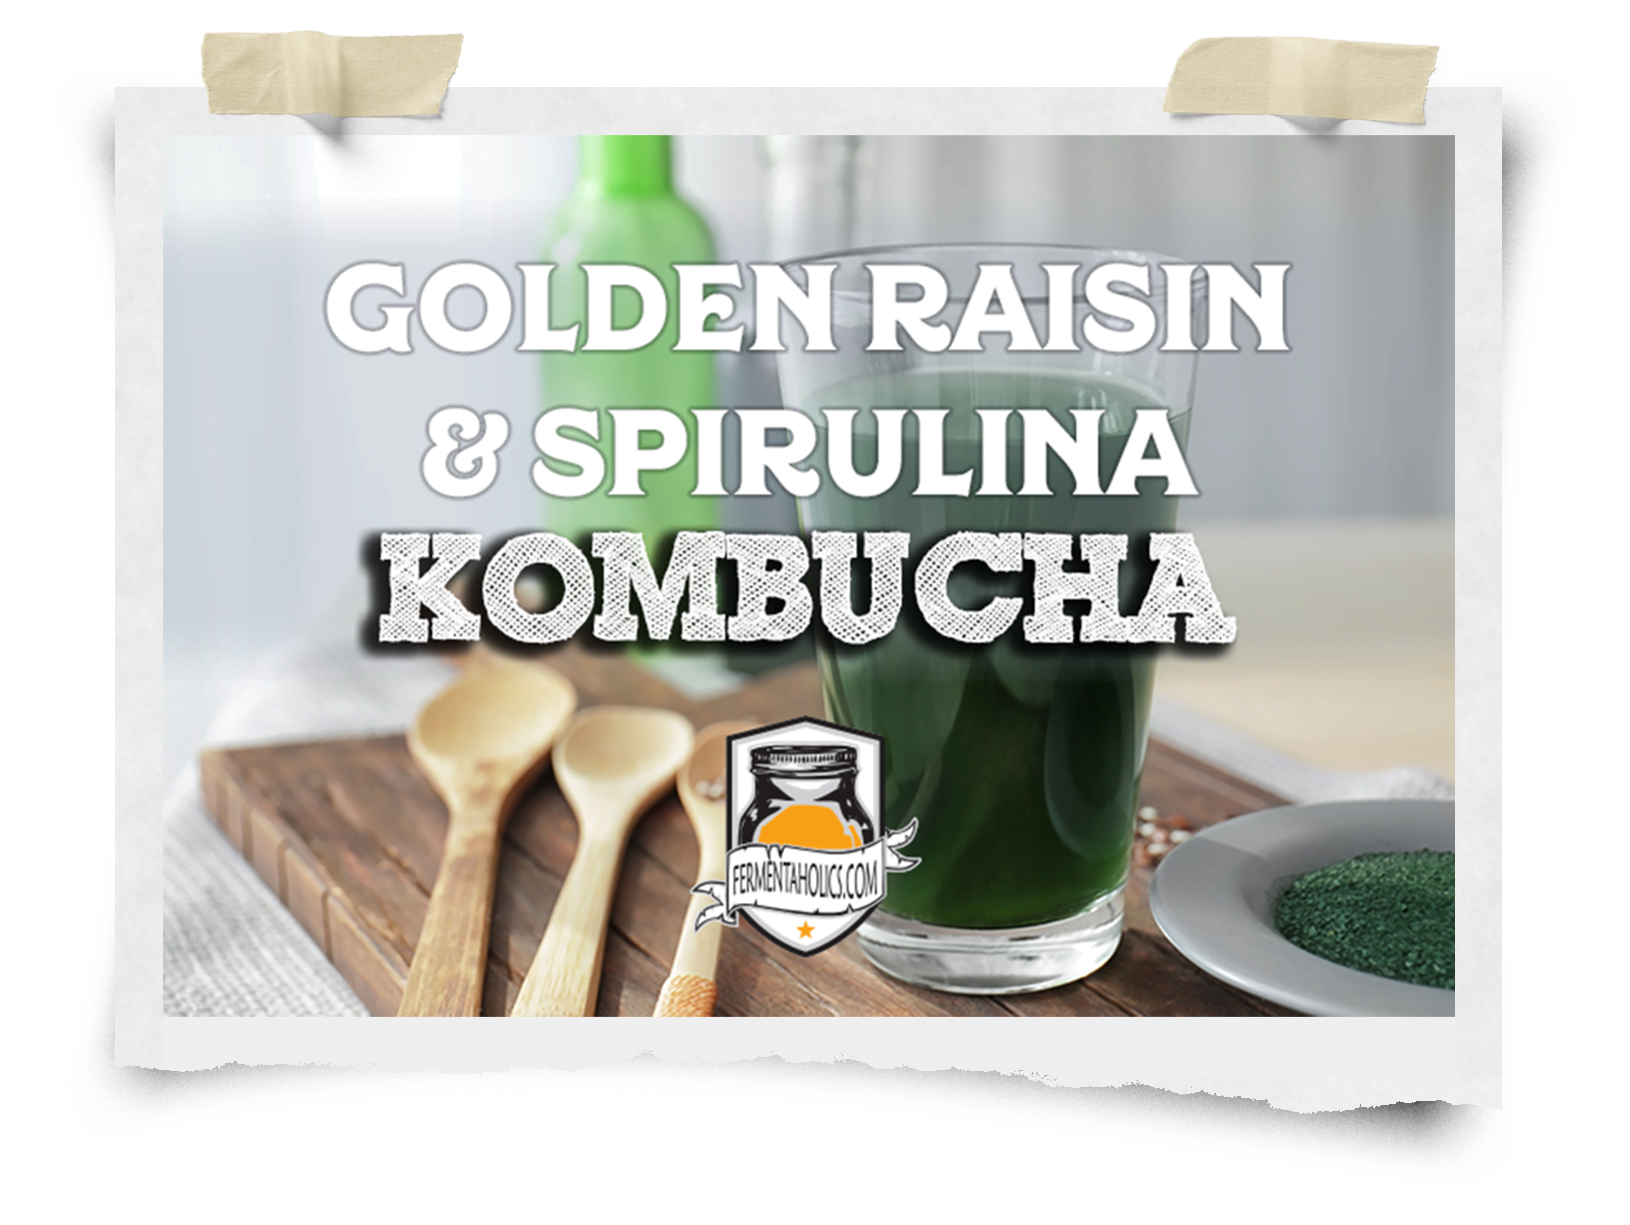 Golden Raisin & Spirulina Kombucha Recipe